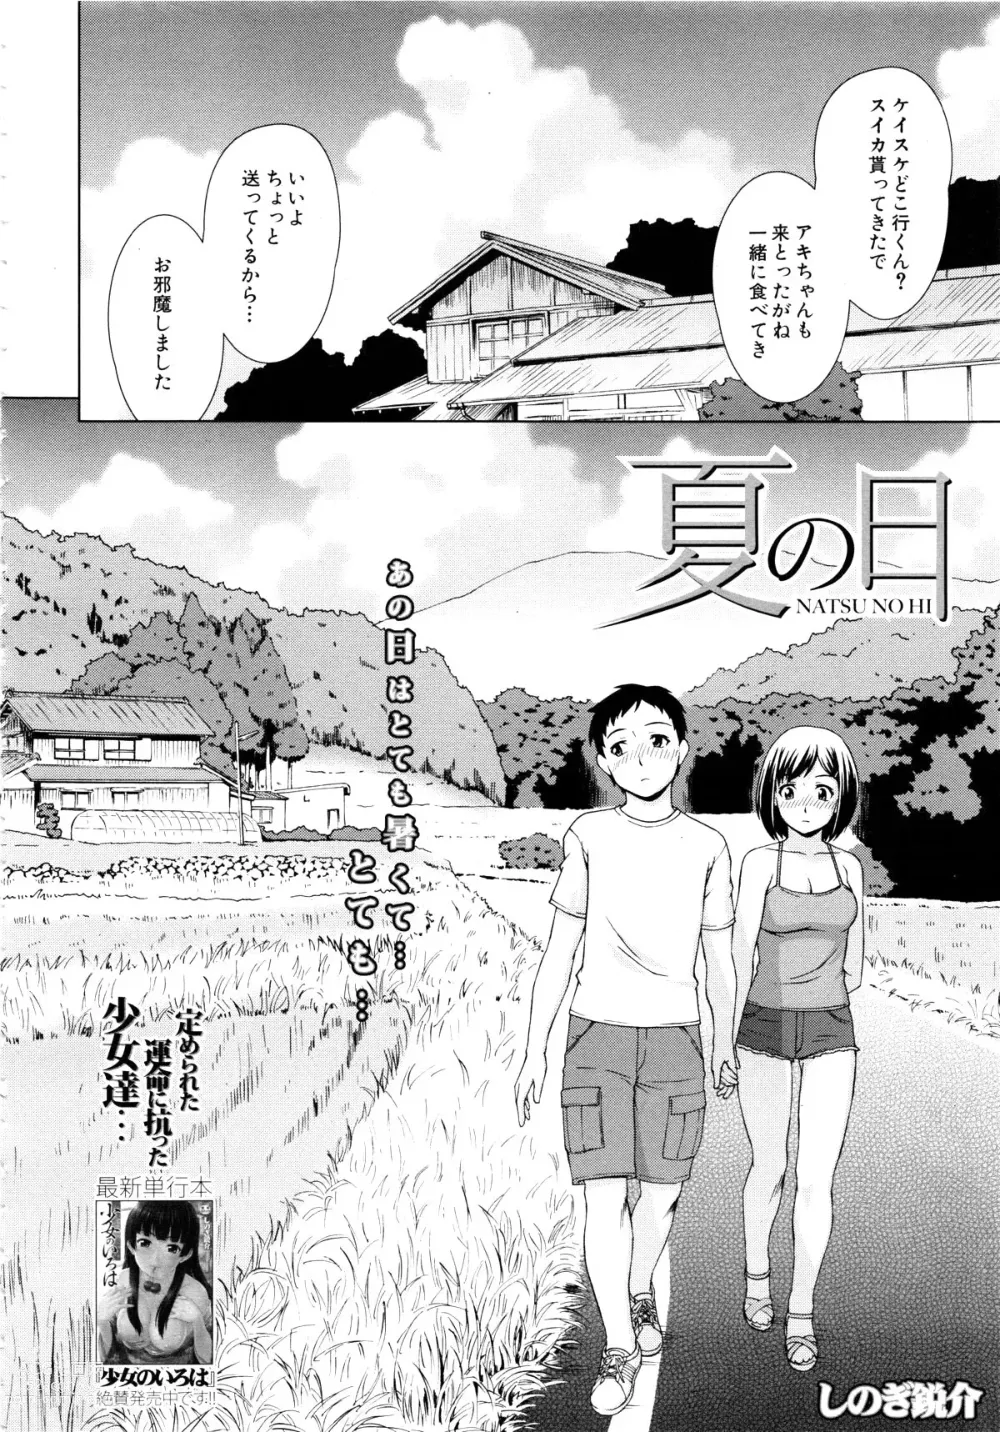 Page 2 of manga Natsu no Hi